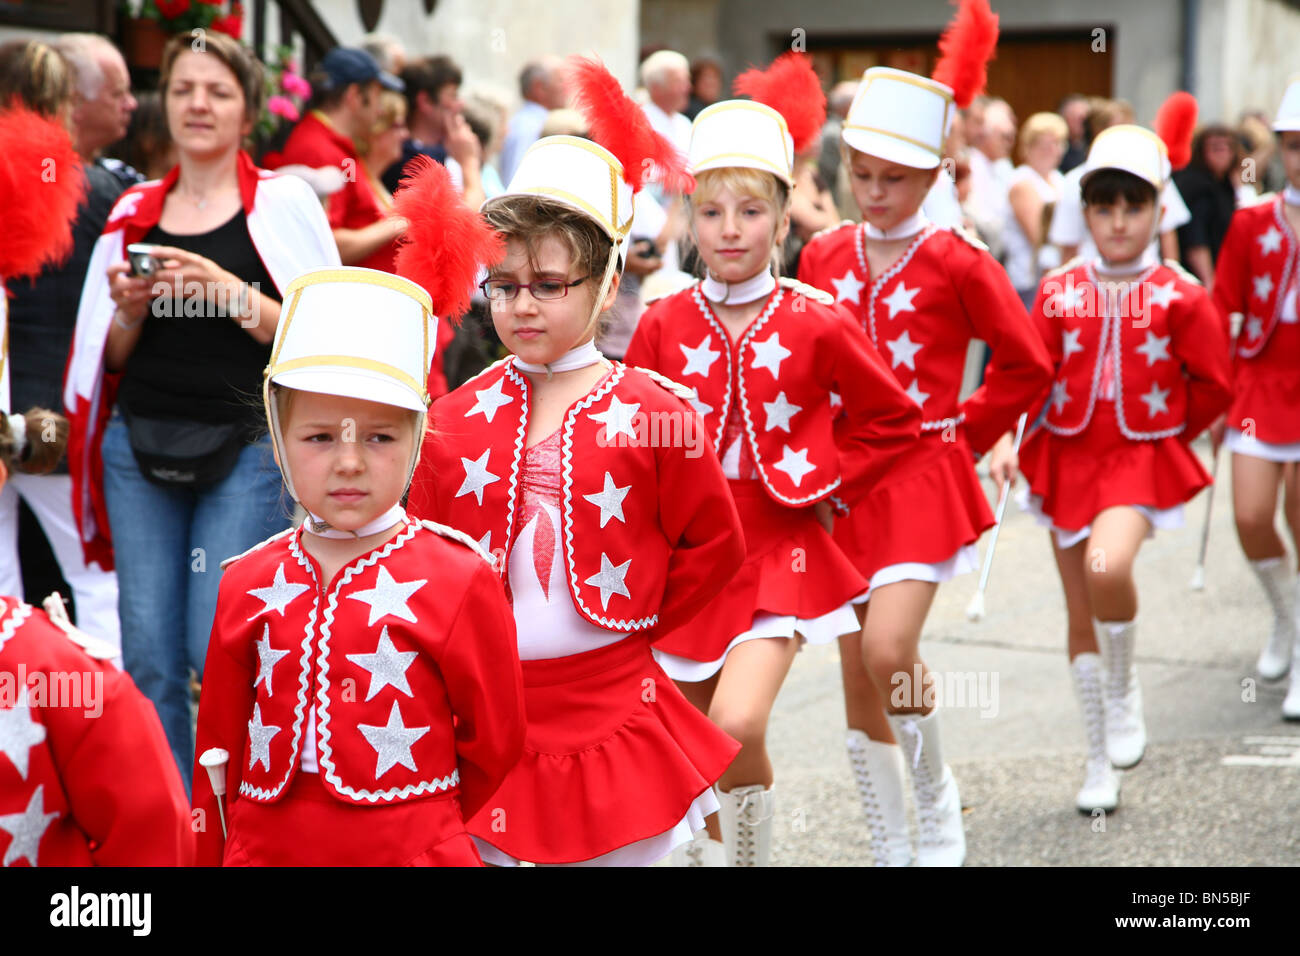 Fête traditionnelle dans un petit village alsacien en France Banque D'Images